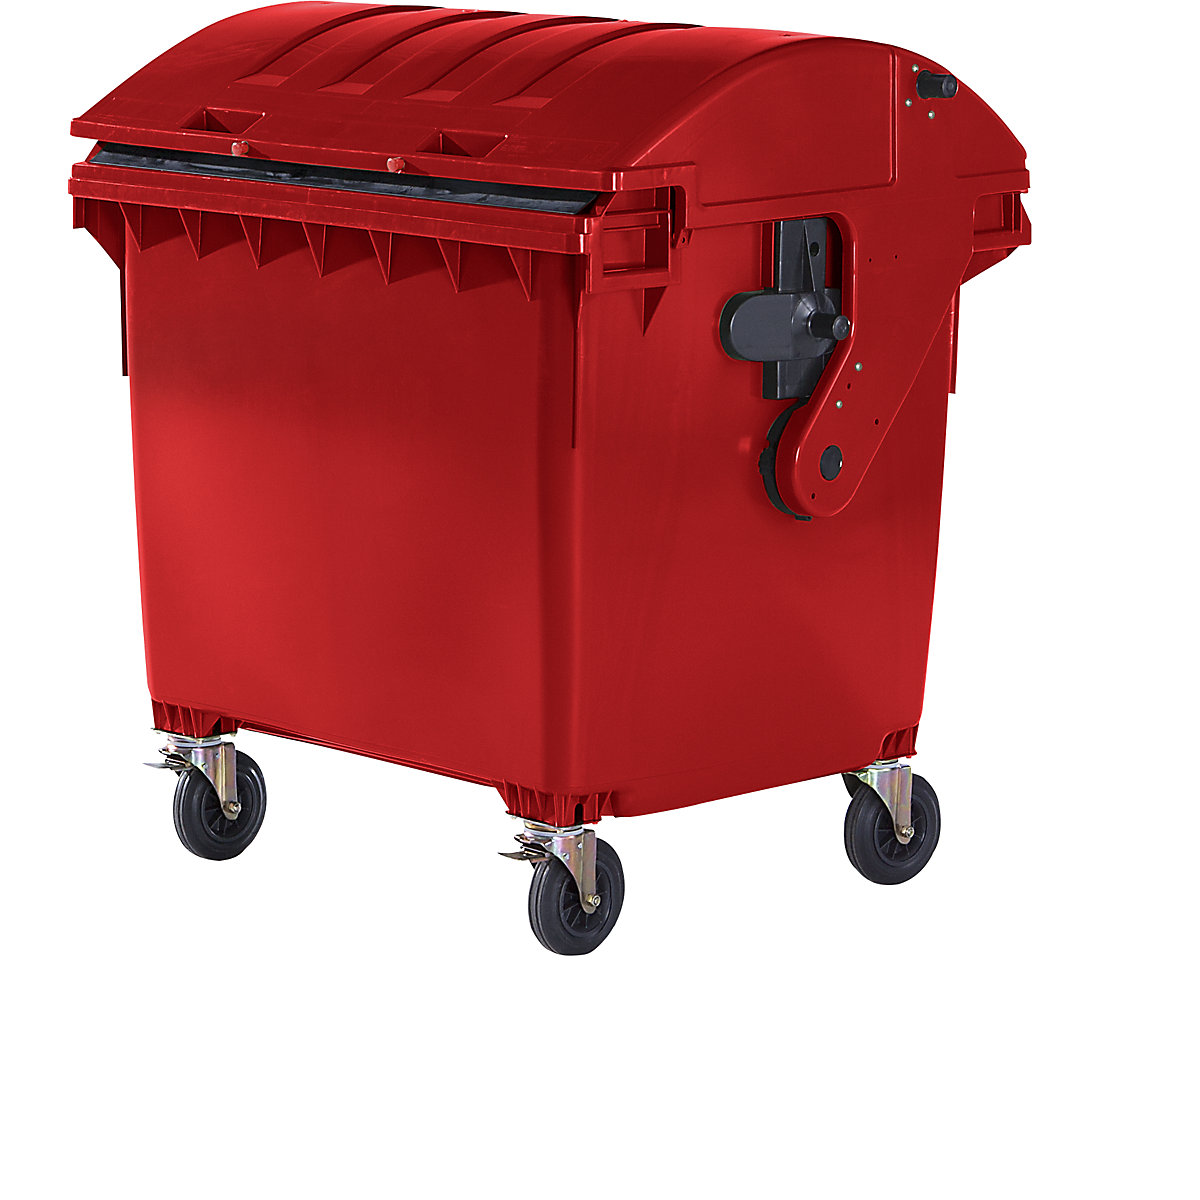 Container per rifiuti in plastica, DIN EN 840, capacità 1100 l, largh. x alt. x prof. 1360 x 1465 x 1100 mm, coperchio scorrevole, sicura per bambini, rosso-5